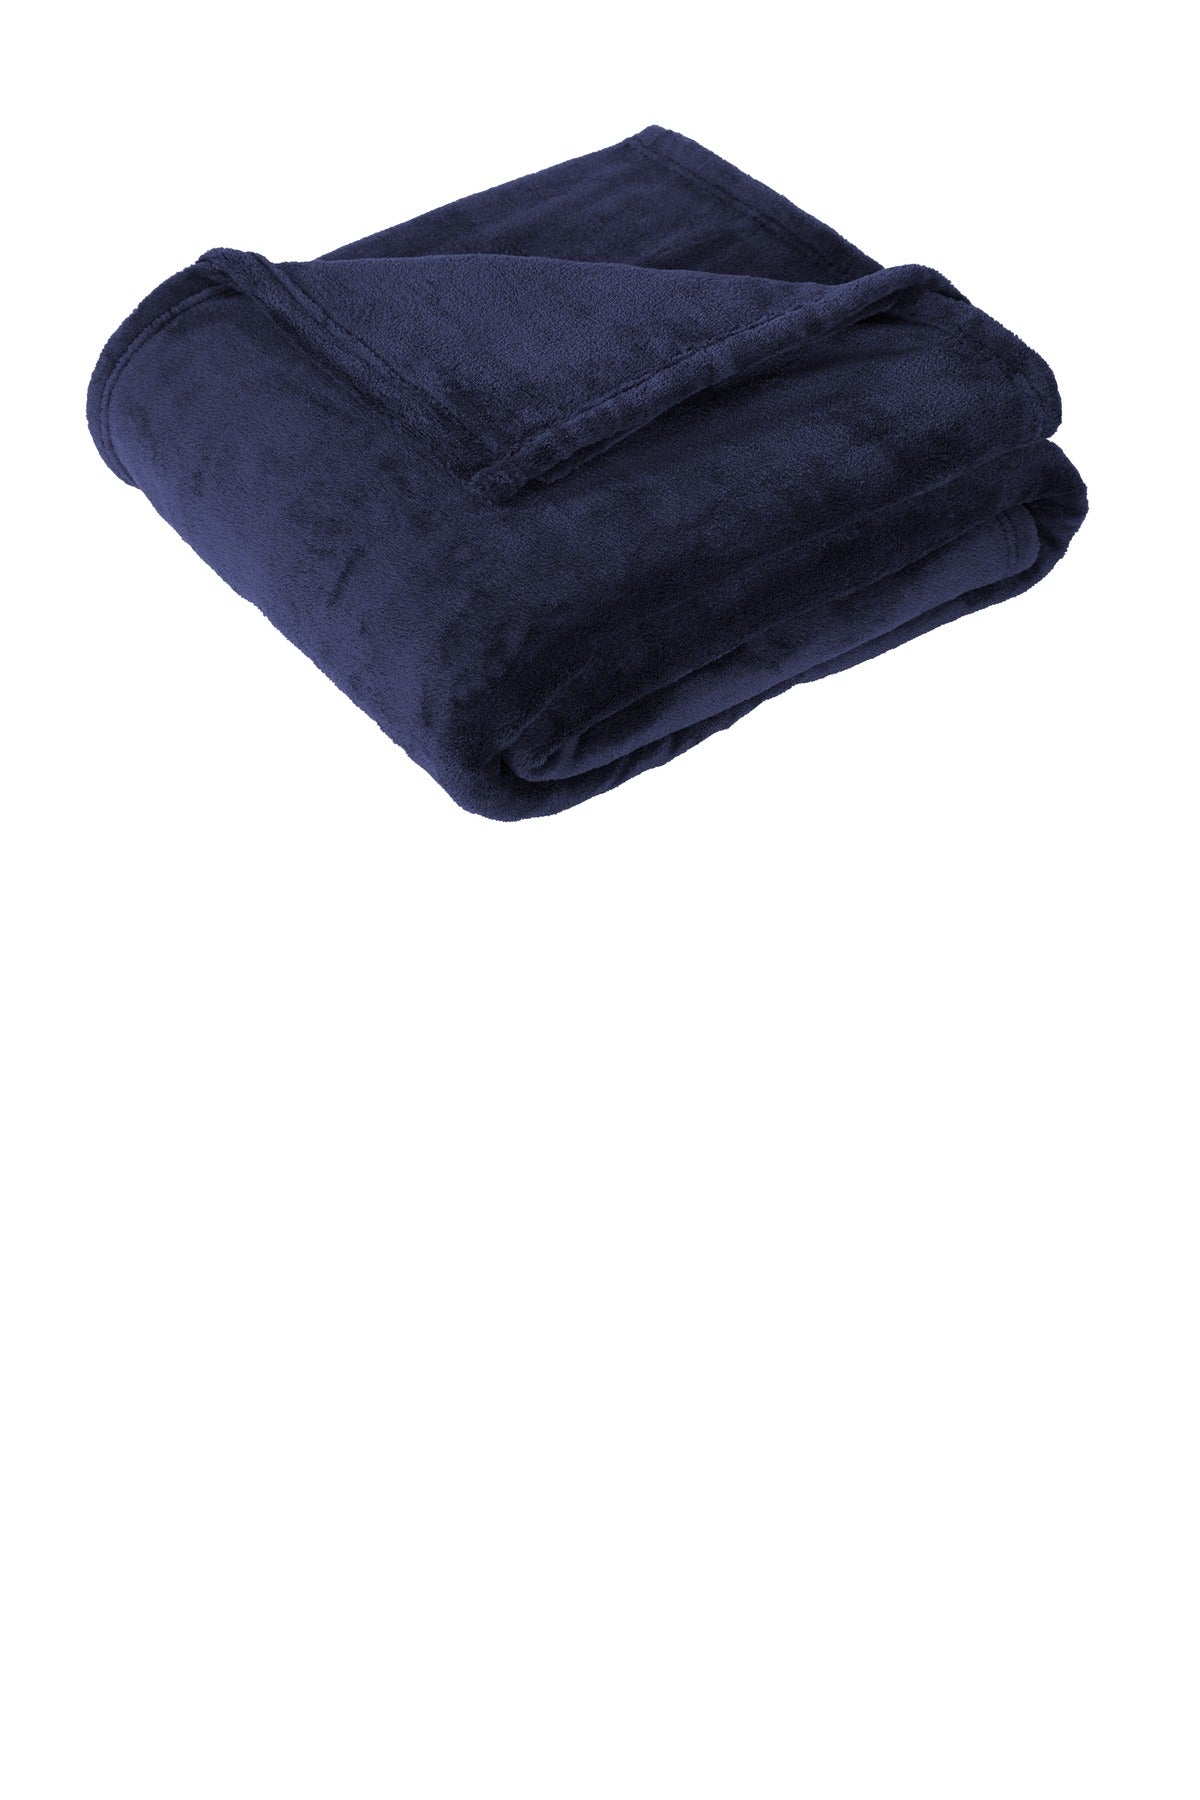 Port Authority ® Oversized Ultra Plush Blanket. BP32 - DFW Impression